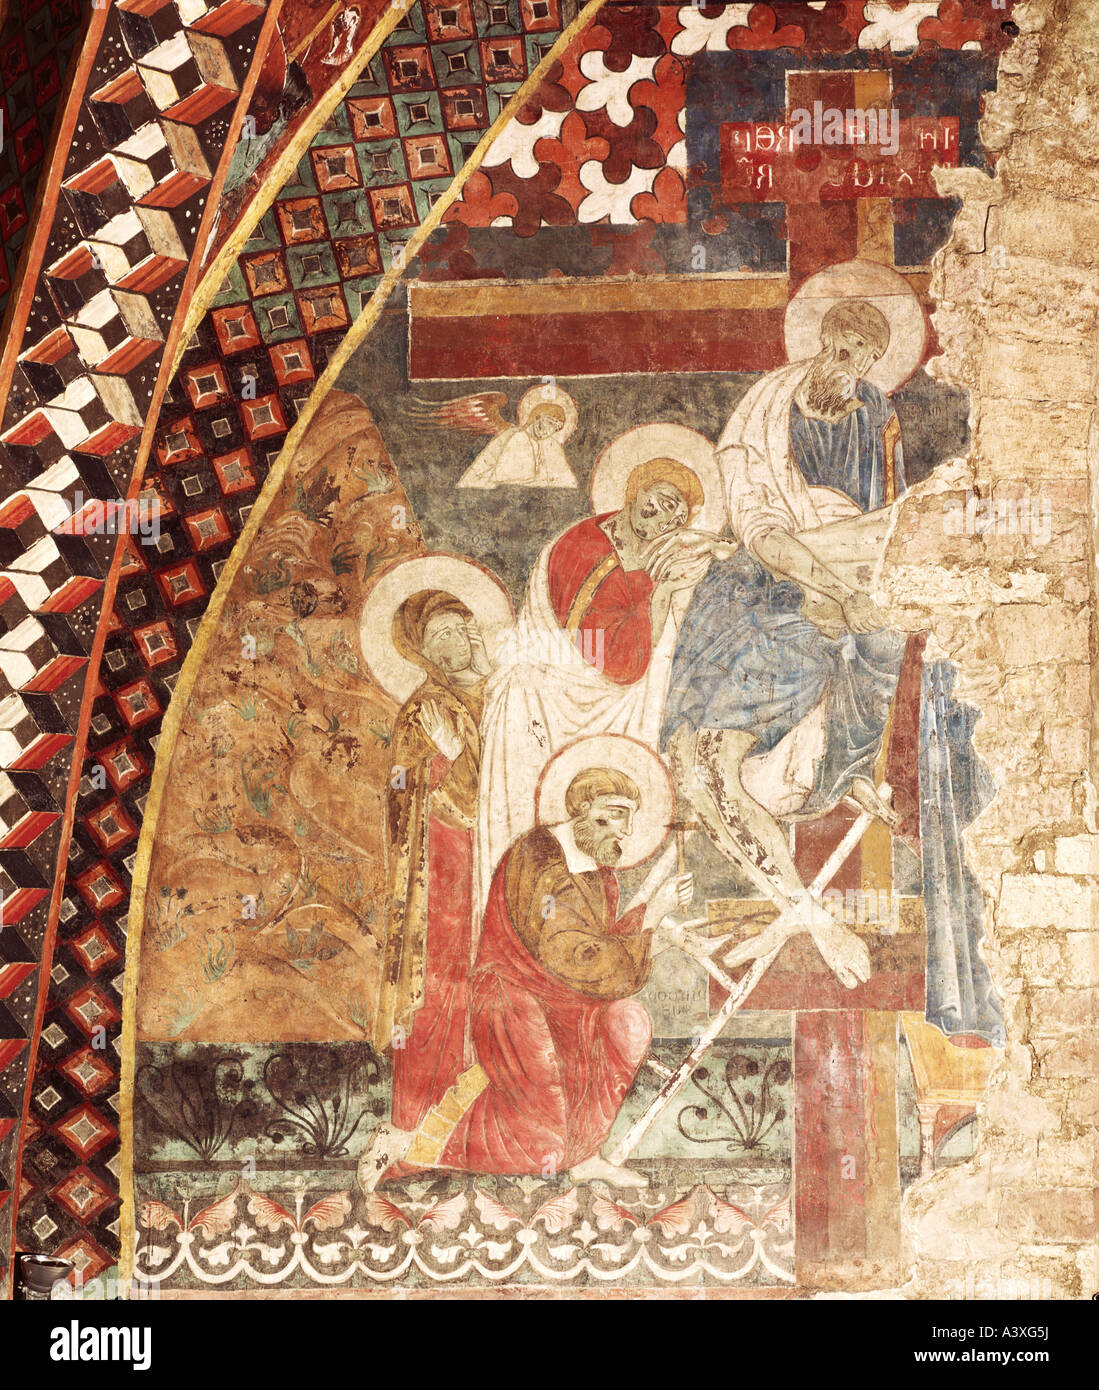 Bildende Kunst, sakrale Kunst, Jesus Christus, Leidenschaft, Malerei, Christus vom Kreuz, Meister des Heiligen Franziskus, ca. 1260, niedrige Stockfoto